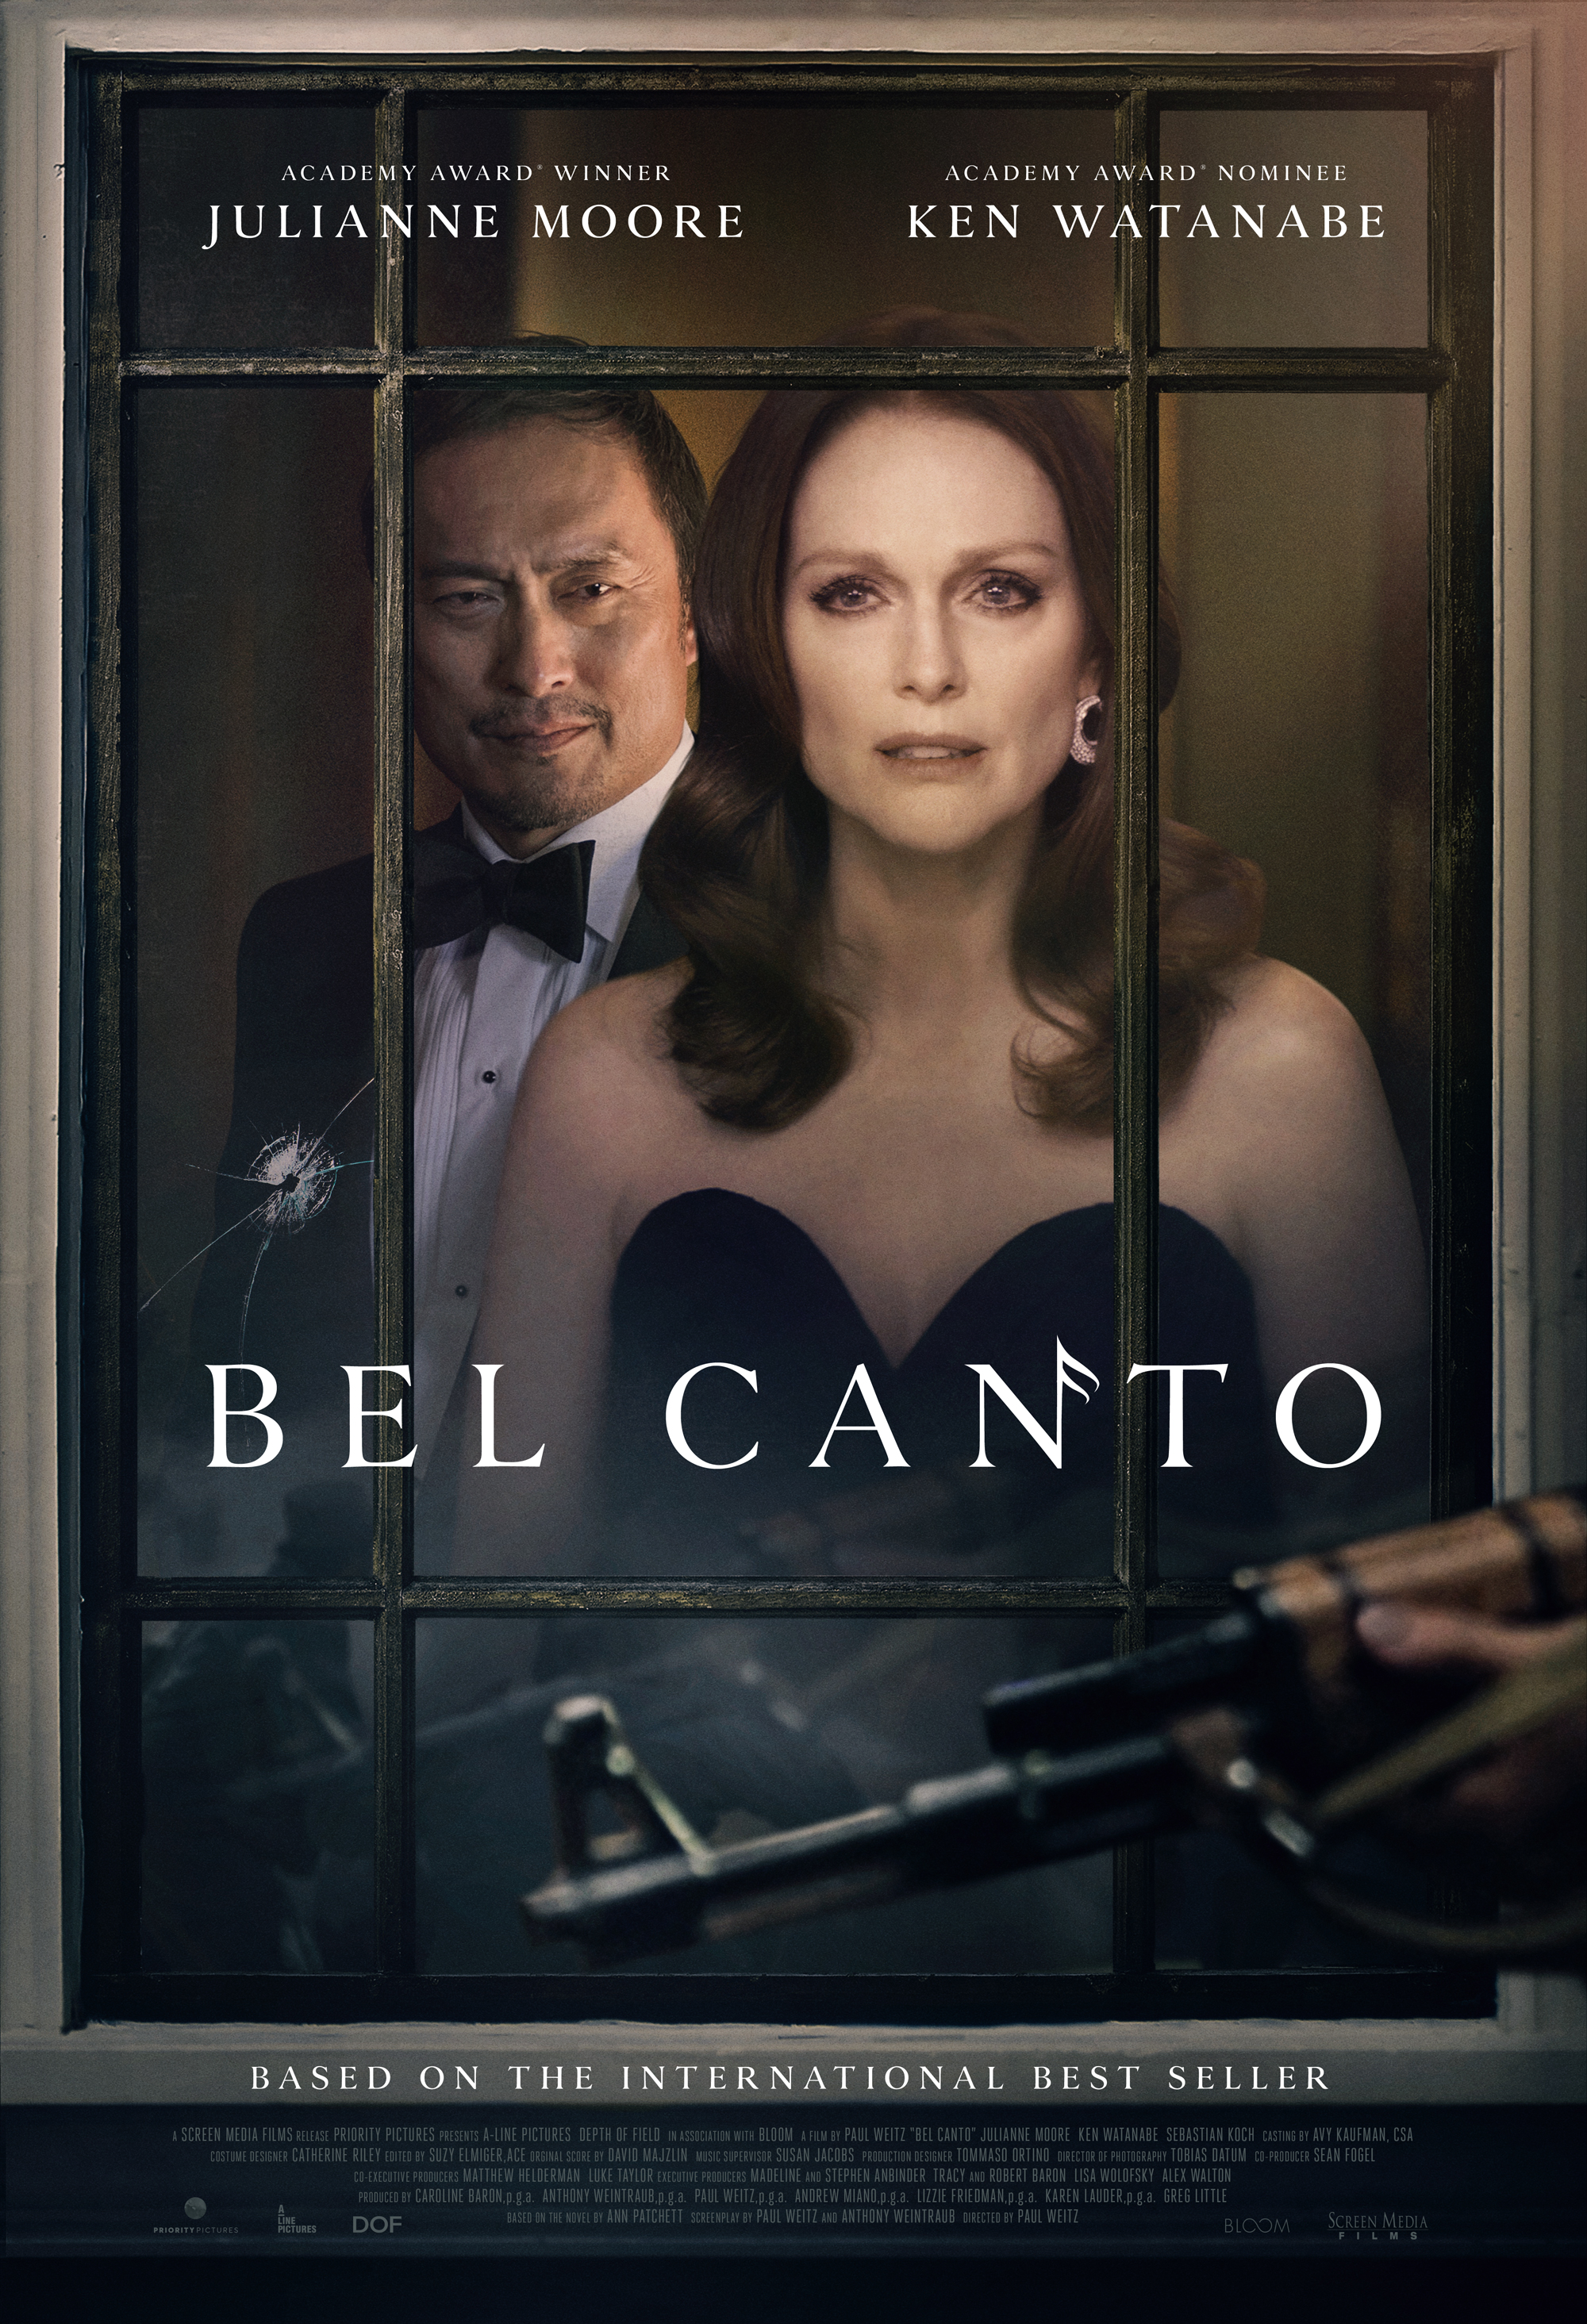 Nonton film Bel Canto layarkaca21 indoxx1 ganool online streaming terbaru